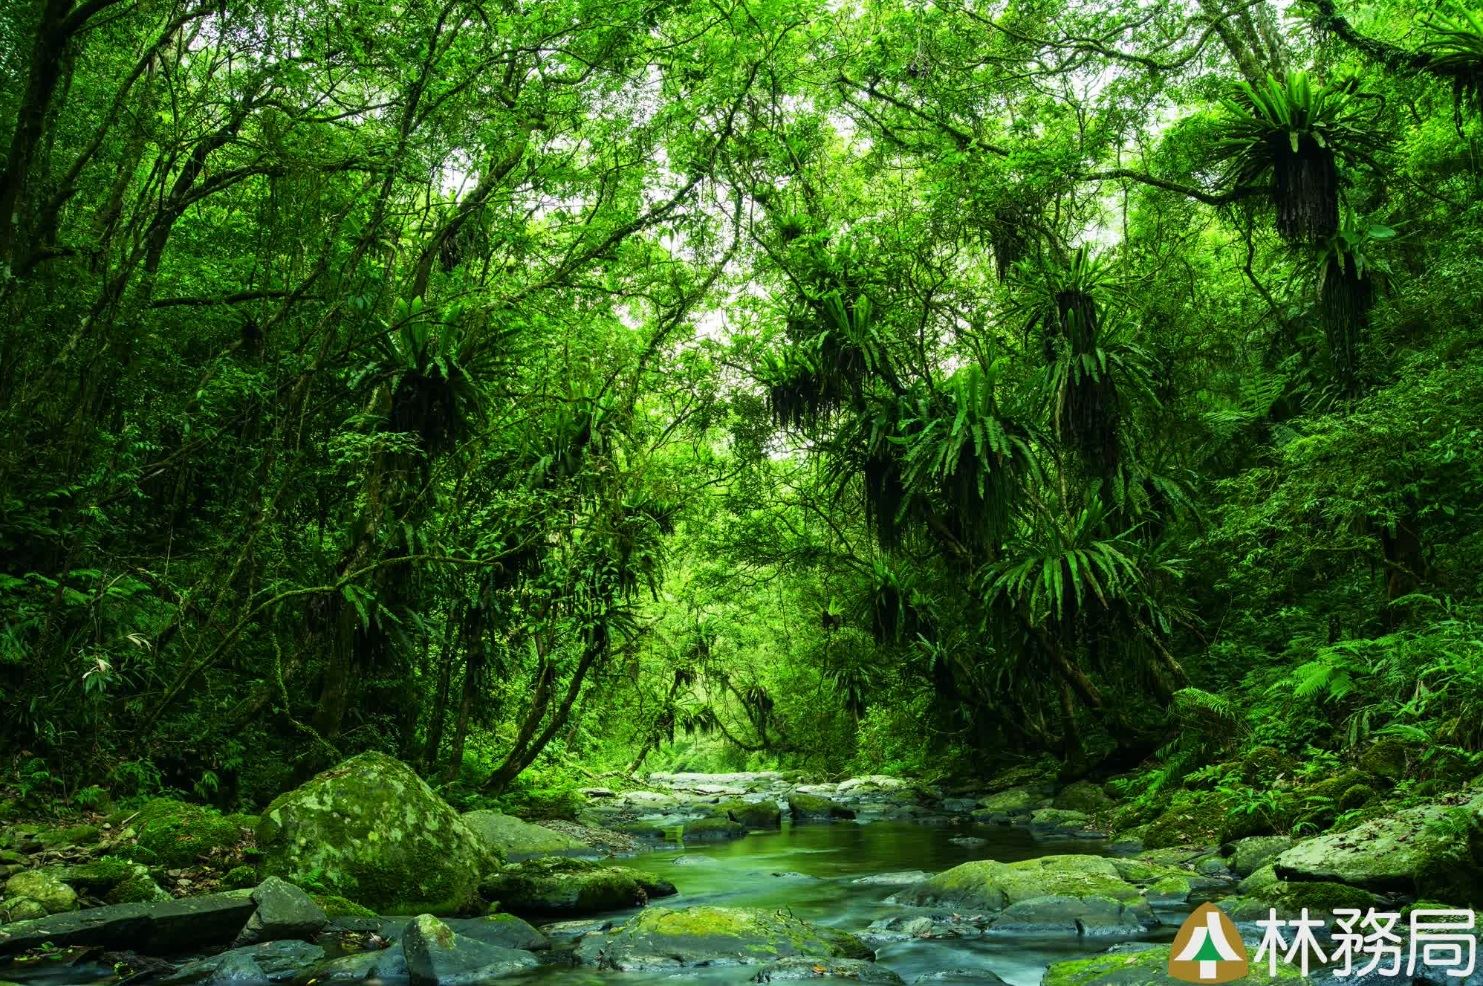 翠綠樹林映照溪水